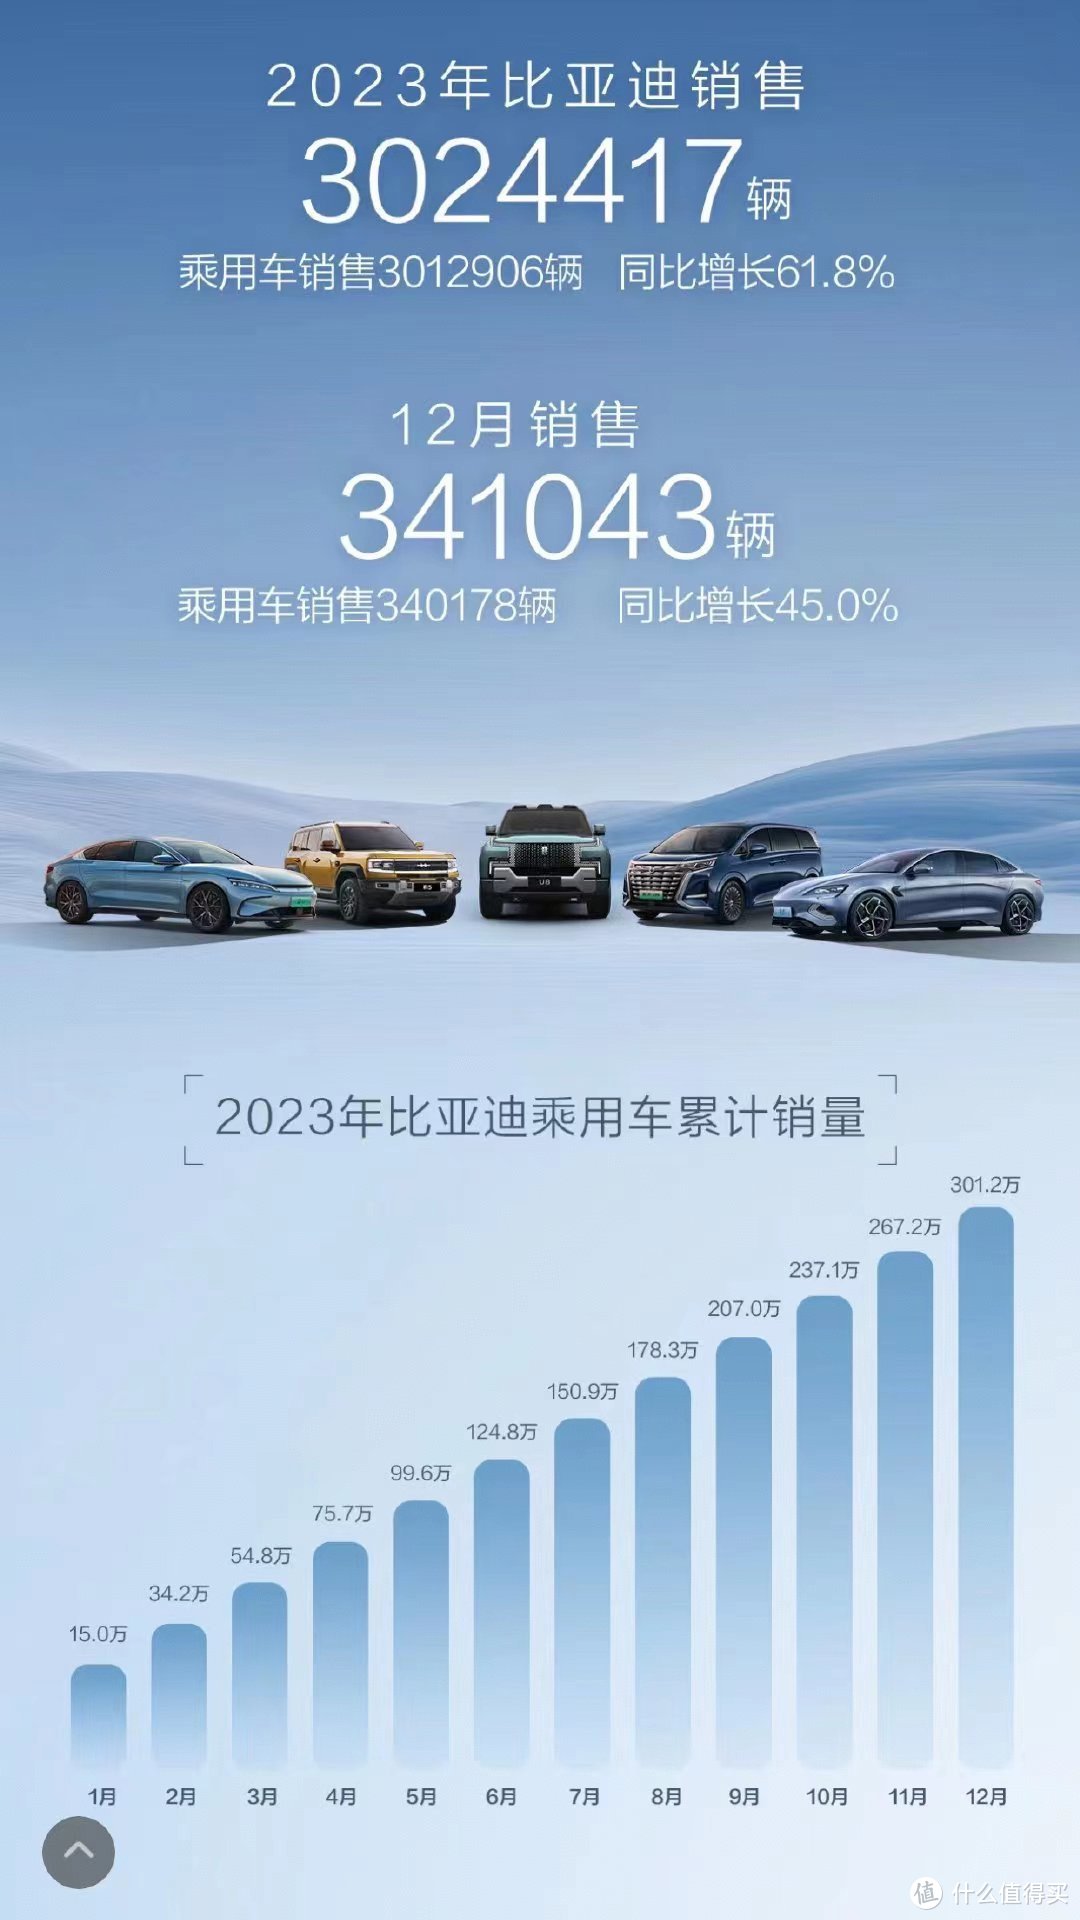 不加定语的销量冠军！比亚迪大卖302万辆，创造中国车企销量新纪录！